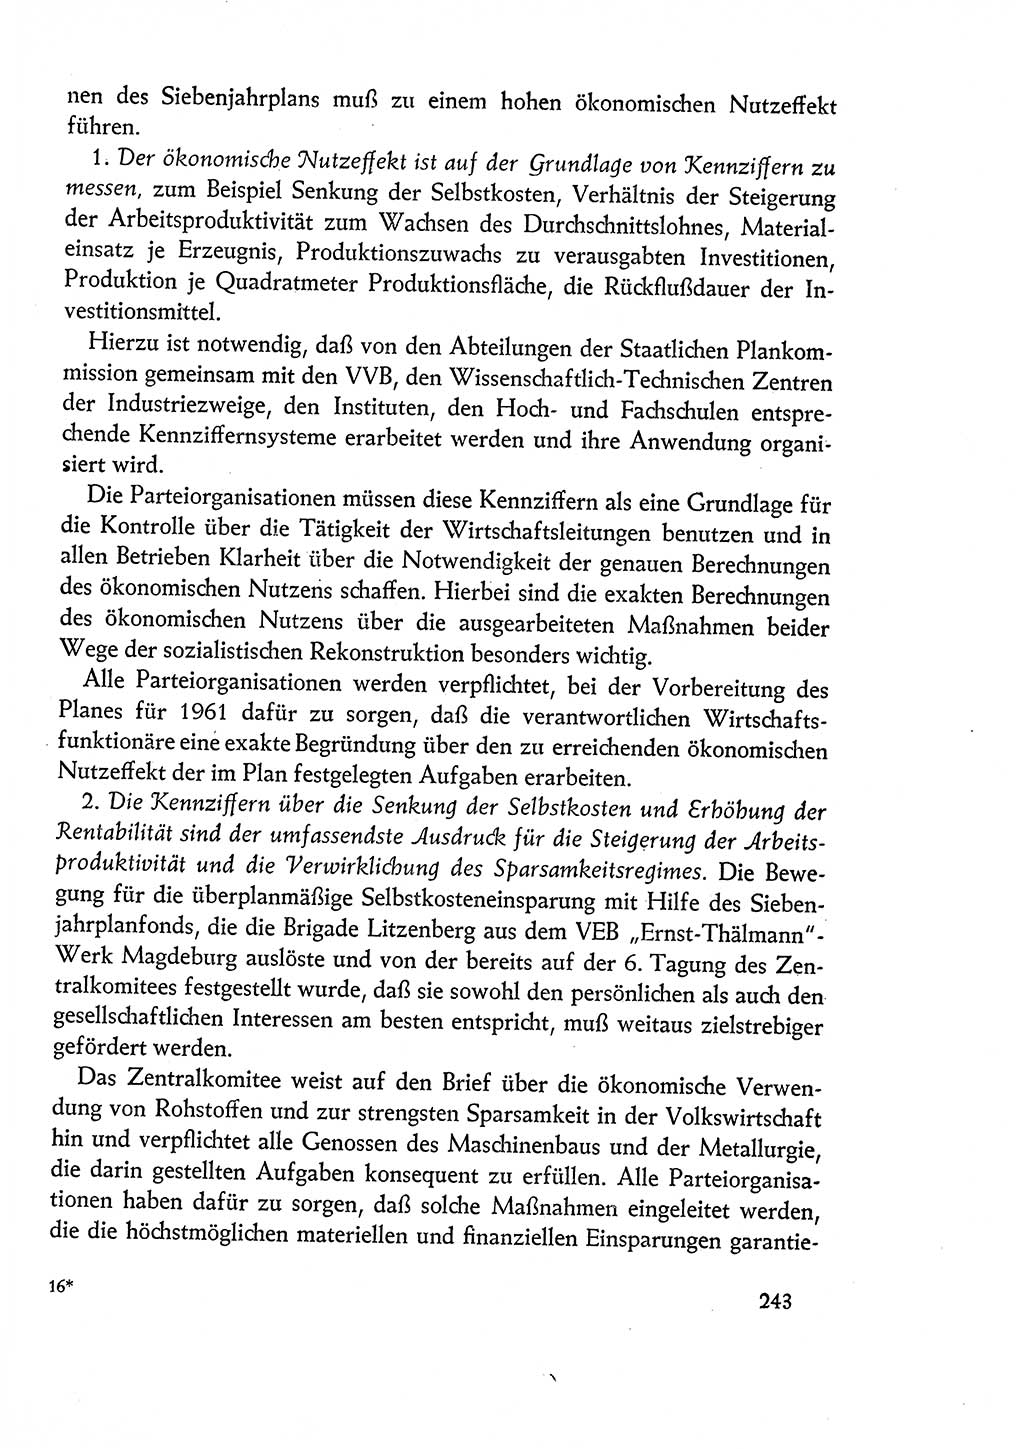 Dokumente der Sozialistischen Einheitspartei Deutschlands (SED) [Deutsche Demokratische Republik (DDR)] 1960-1961, Seite 243 (Dok. SED DDR 1960-1961, S. 243)